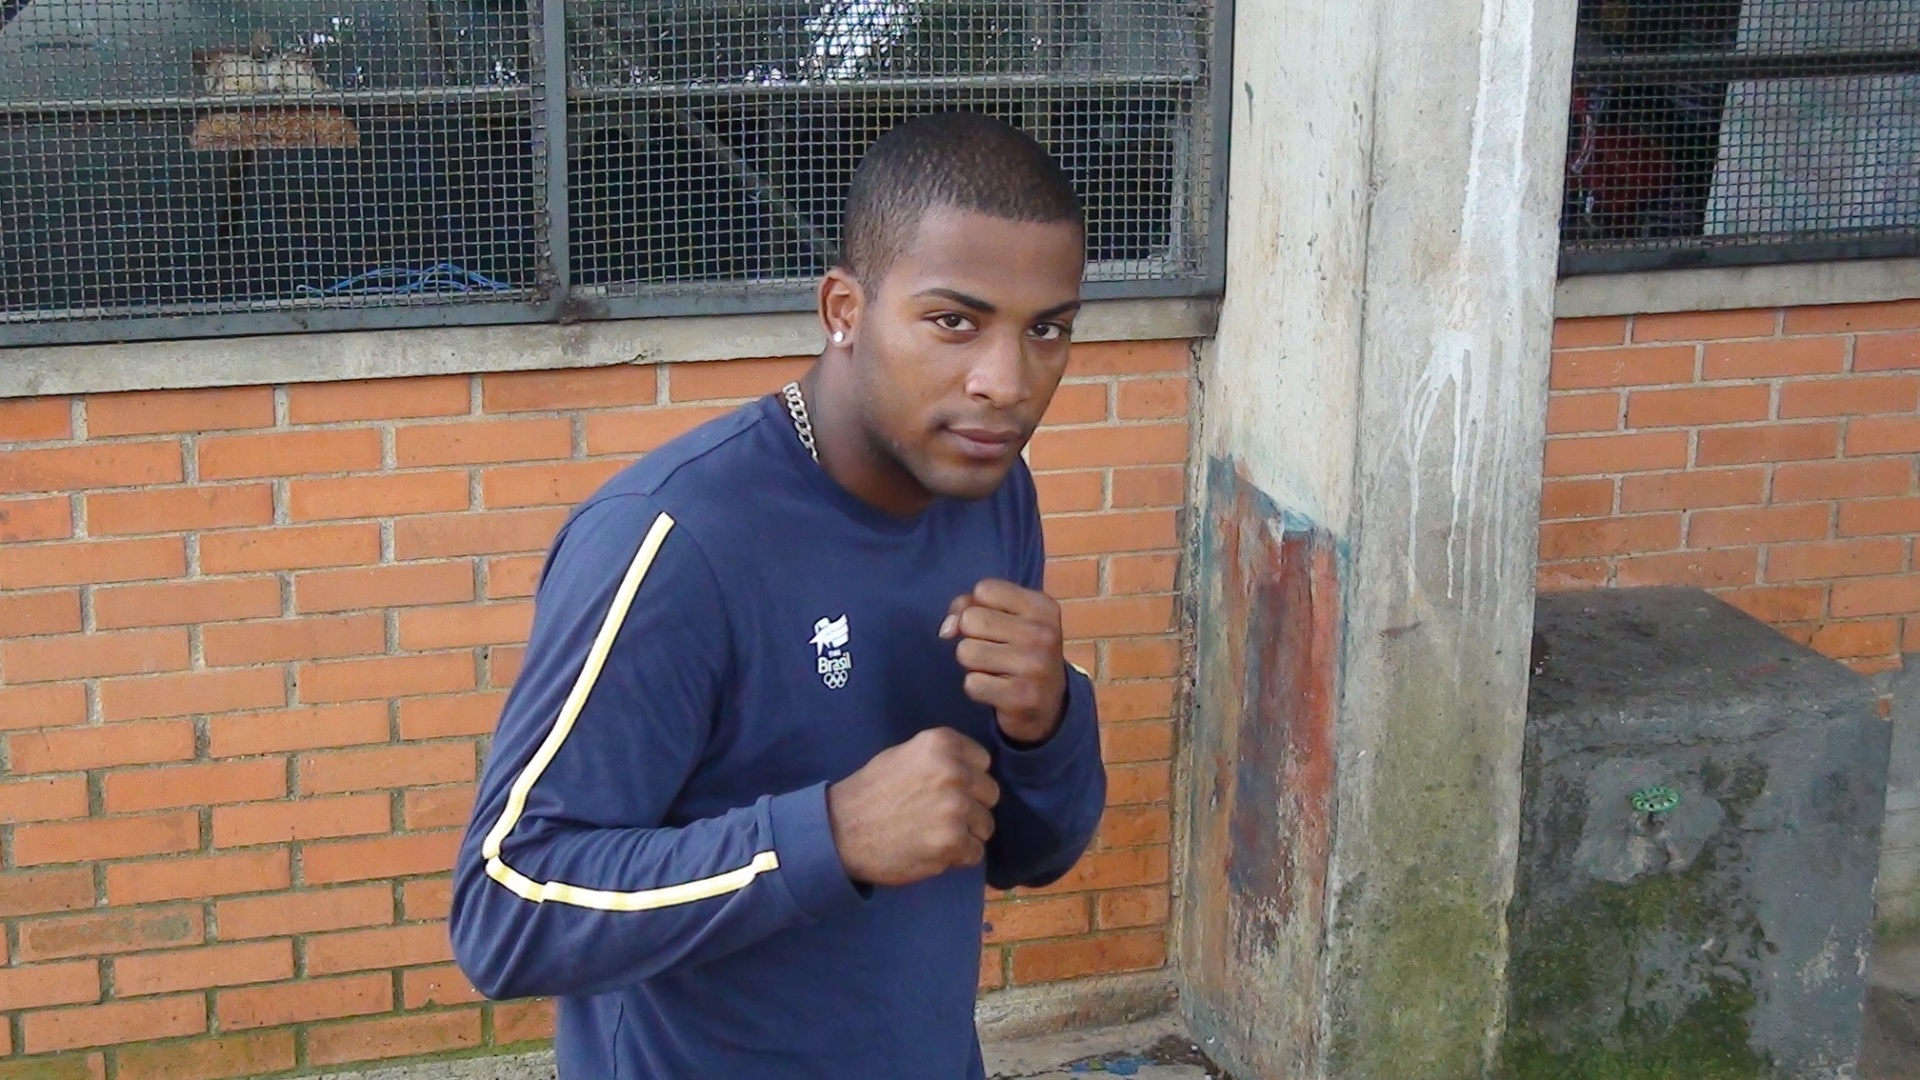 Campeão mundial, Everton Lopes é uma das esperanças do boxe brasileiro em Londres